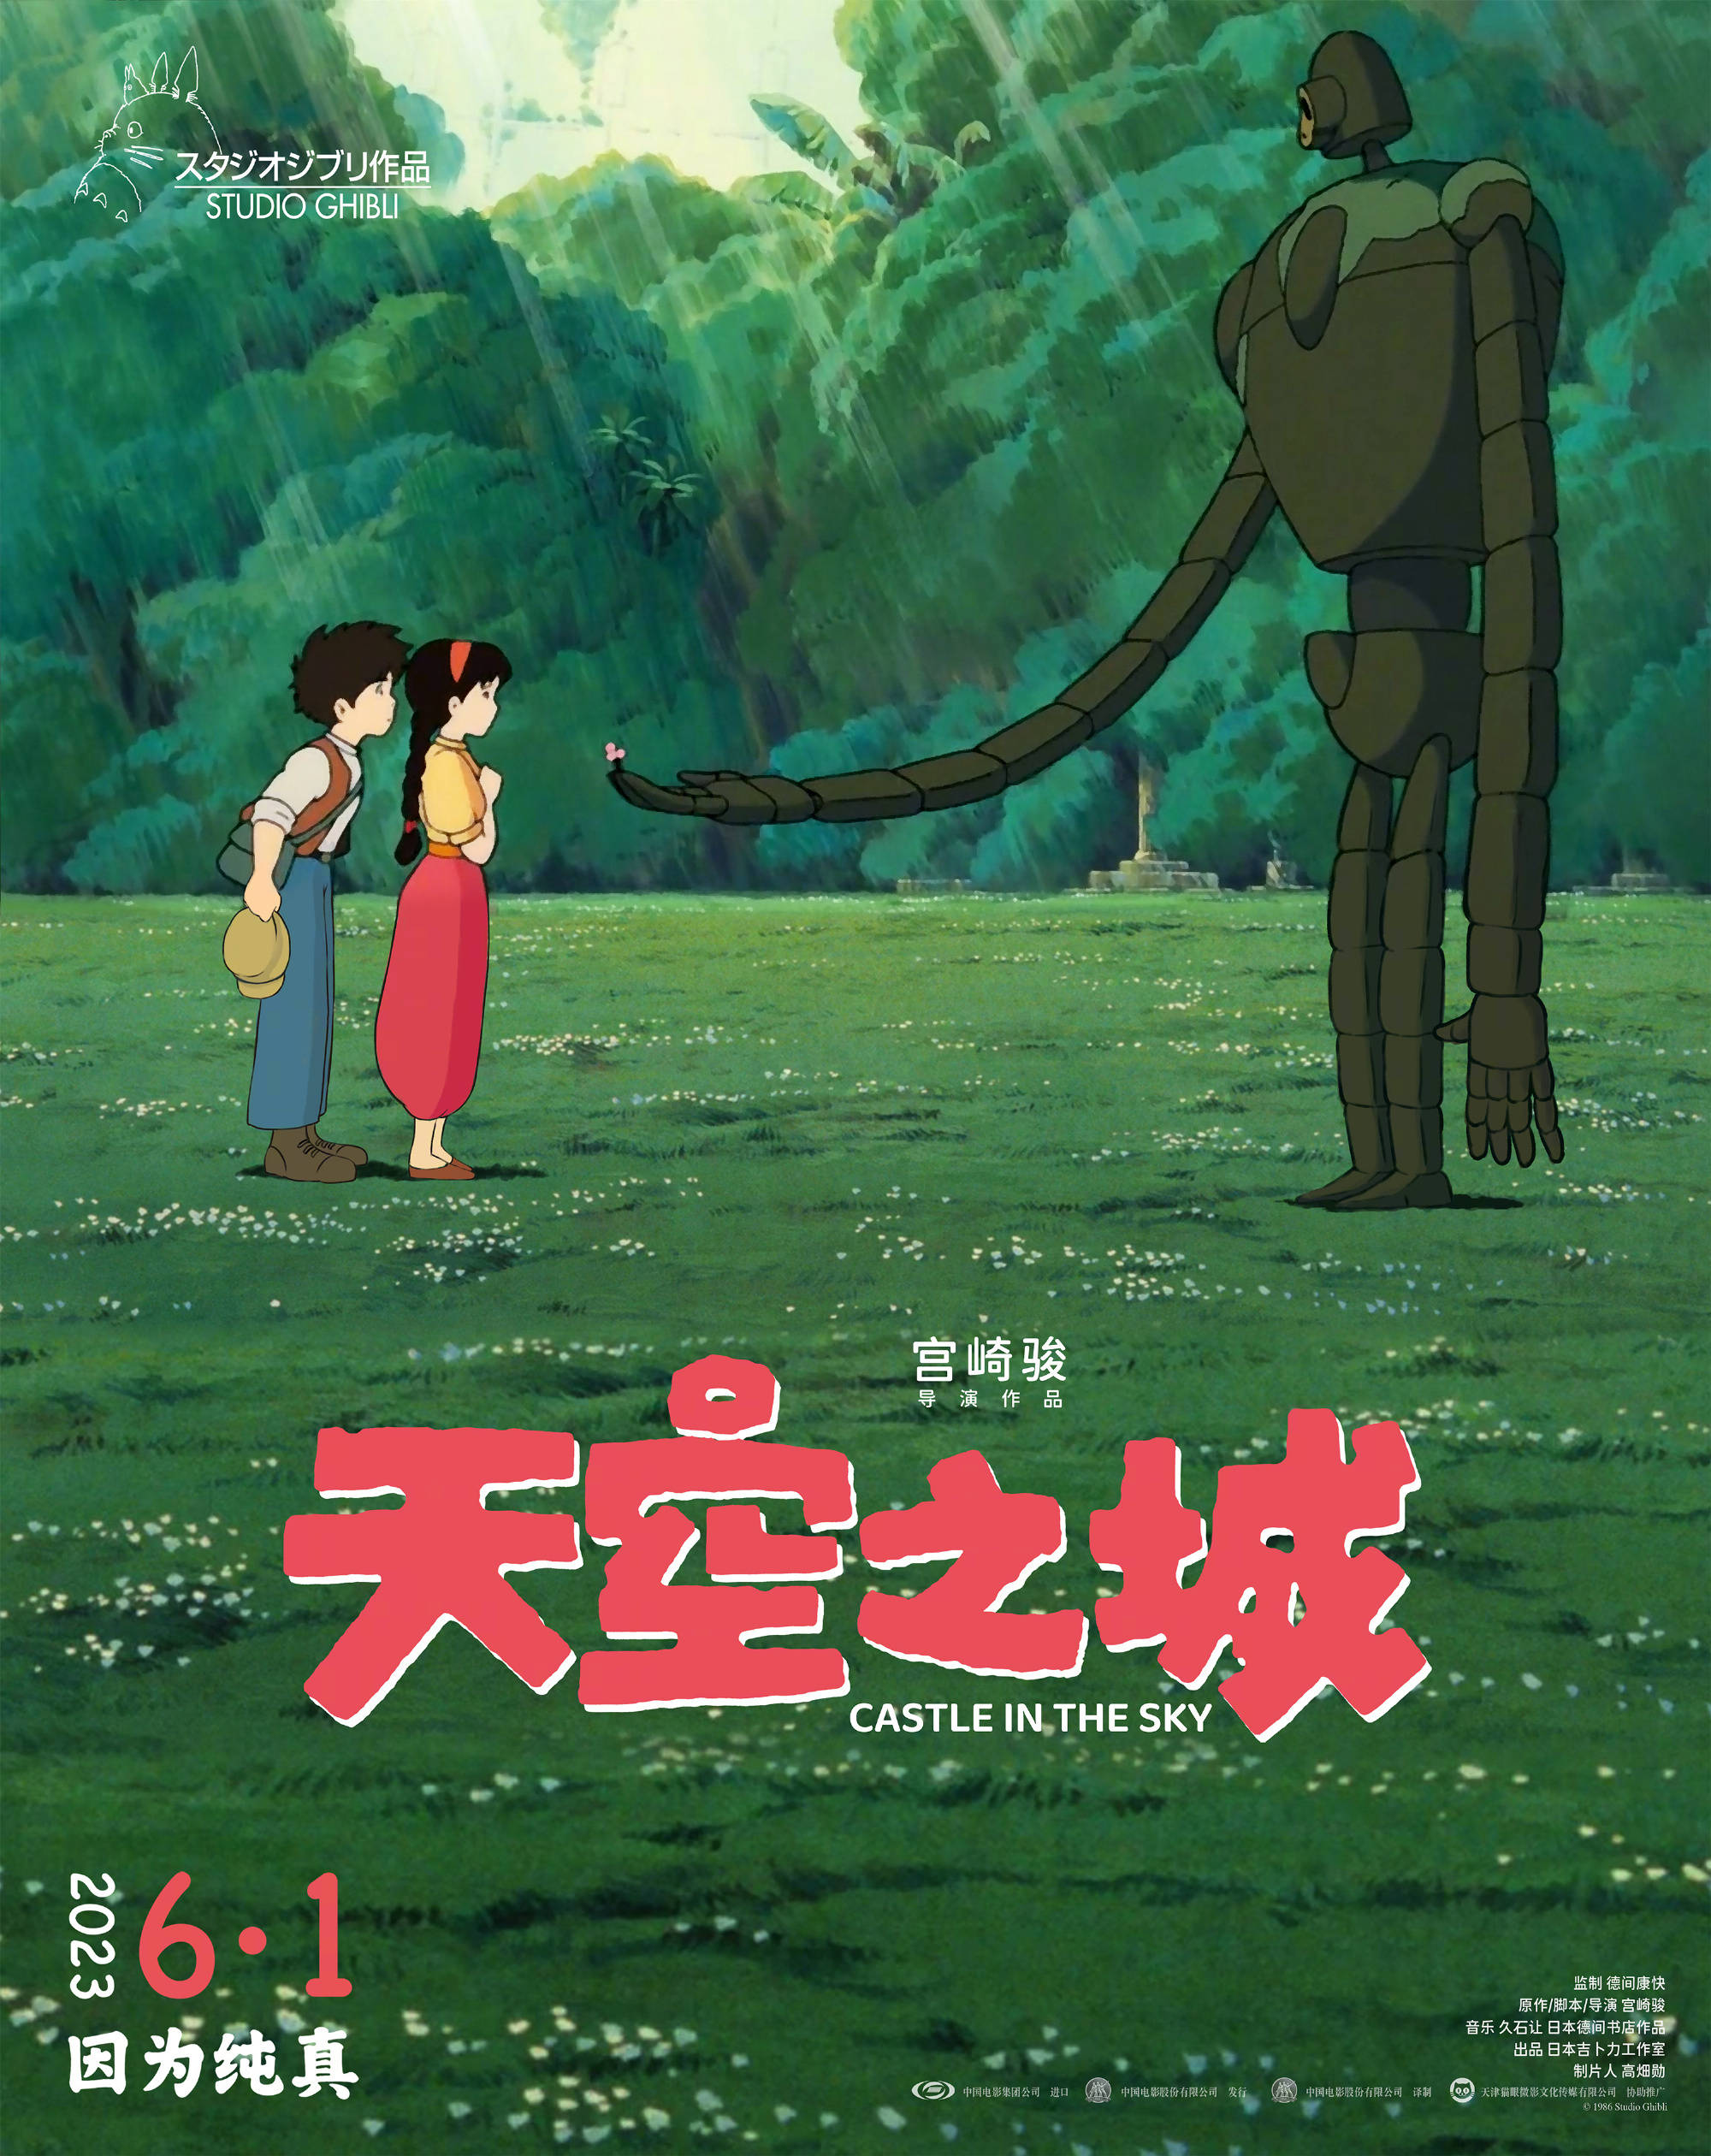 宫崎骏动画电影《天空之城》6.1儿童节上映 “机器人献花”经典场面治愈重现-1